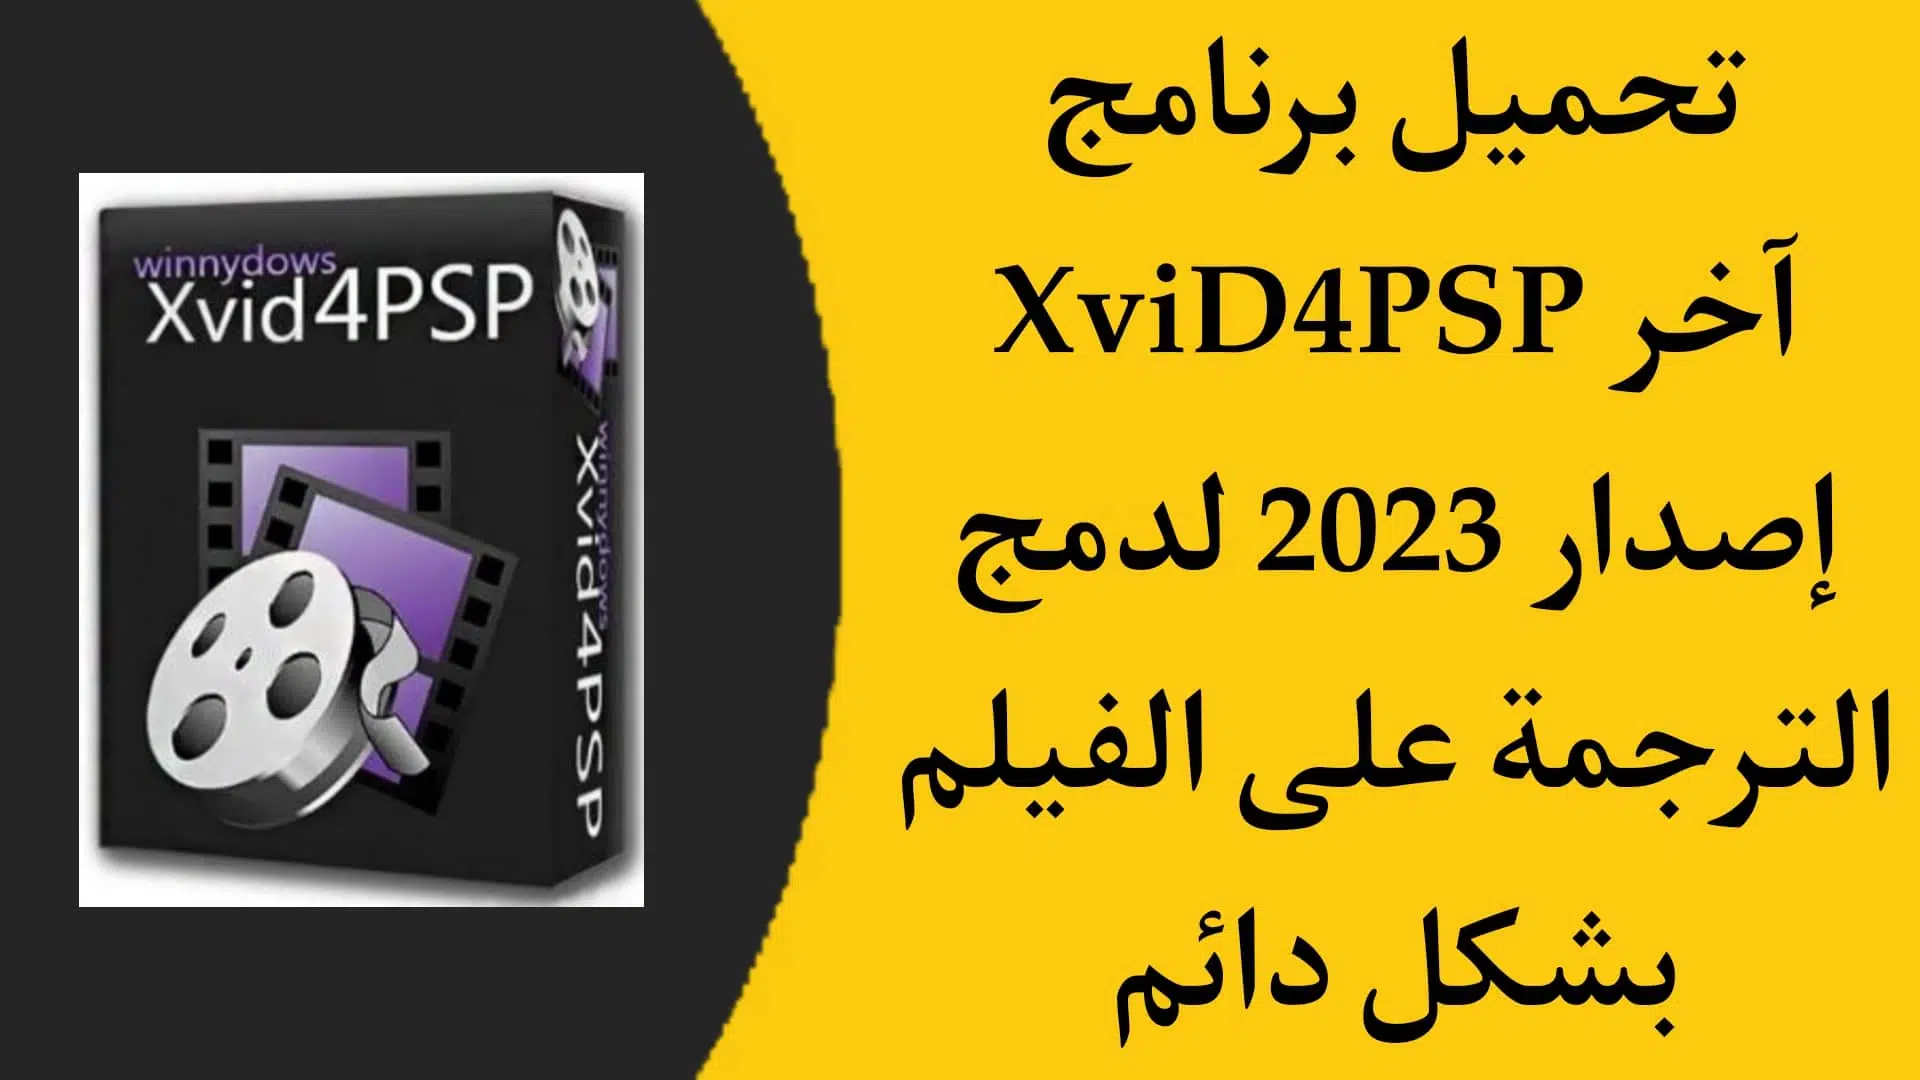 تحميل برنامج XviD4PSP 5.0 للصق الترجمة على الفيلم بشكل دائم